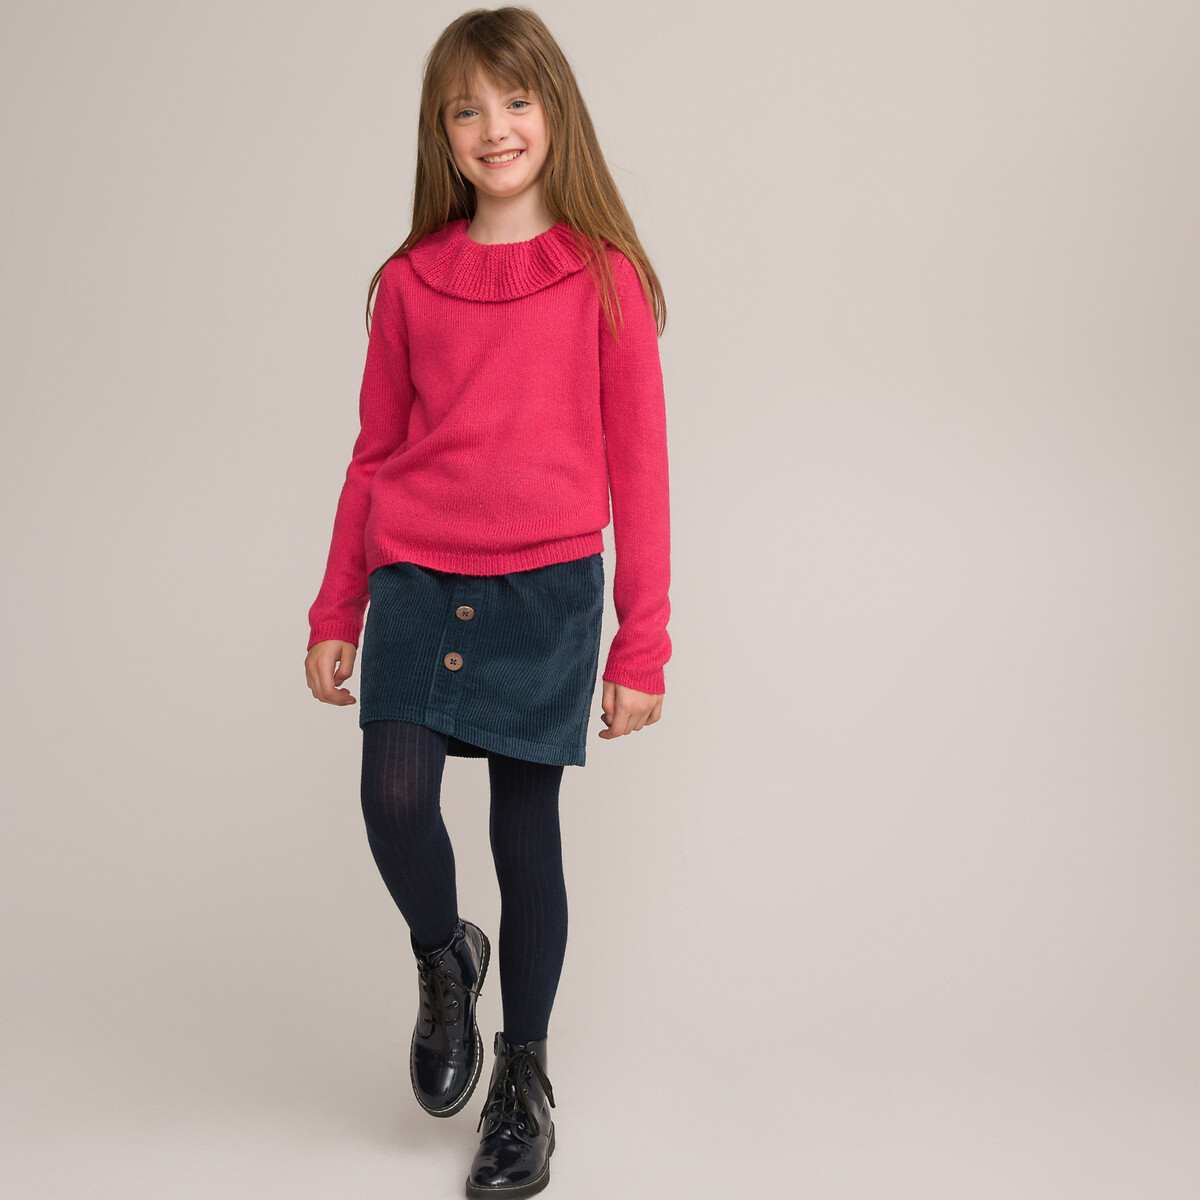 Пуловер С круглым вырезом с воланами из тонкого трикотажа 3-12 лет 12 лет -150 см розовый LaRedoute, размер 12 лет -150 см - фото 2